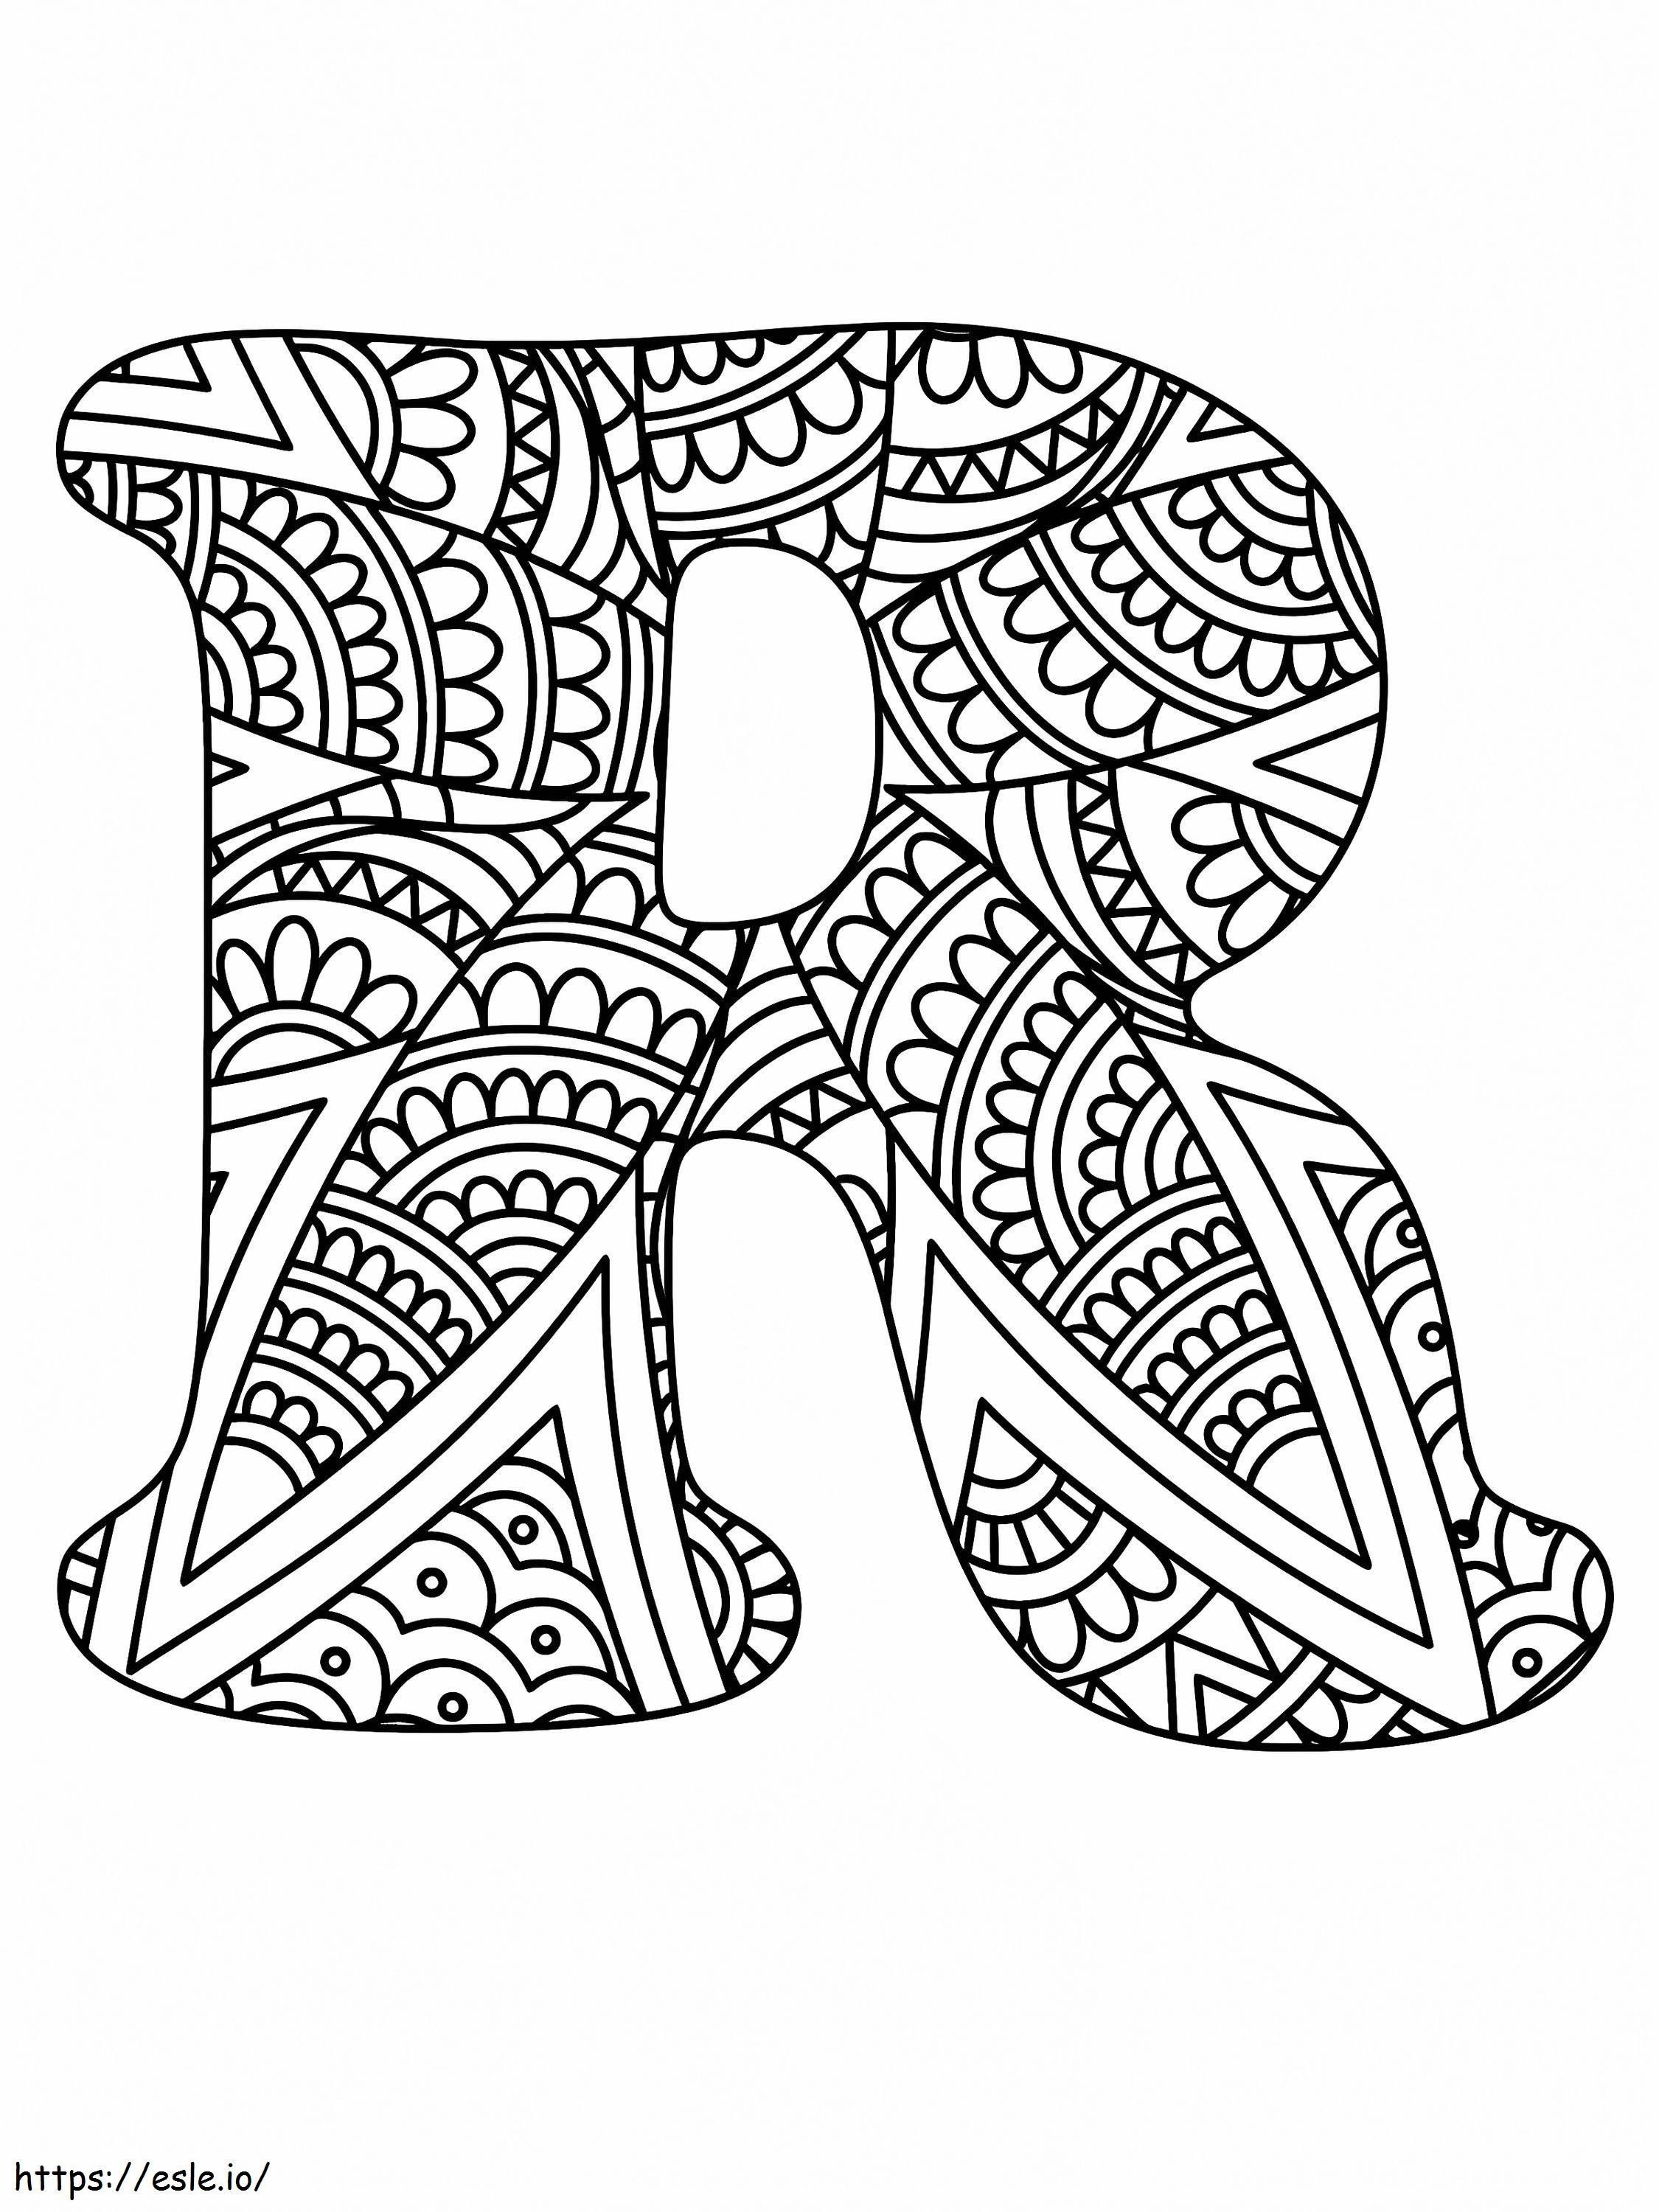 Letra R Alfabeto Mandala para colorear